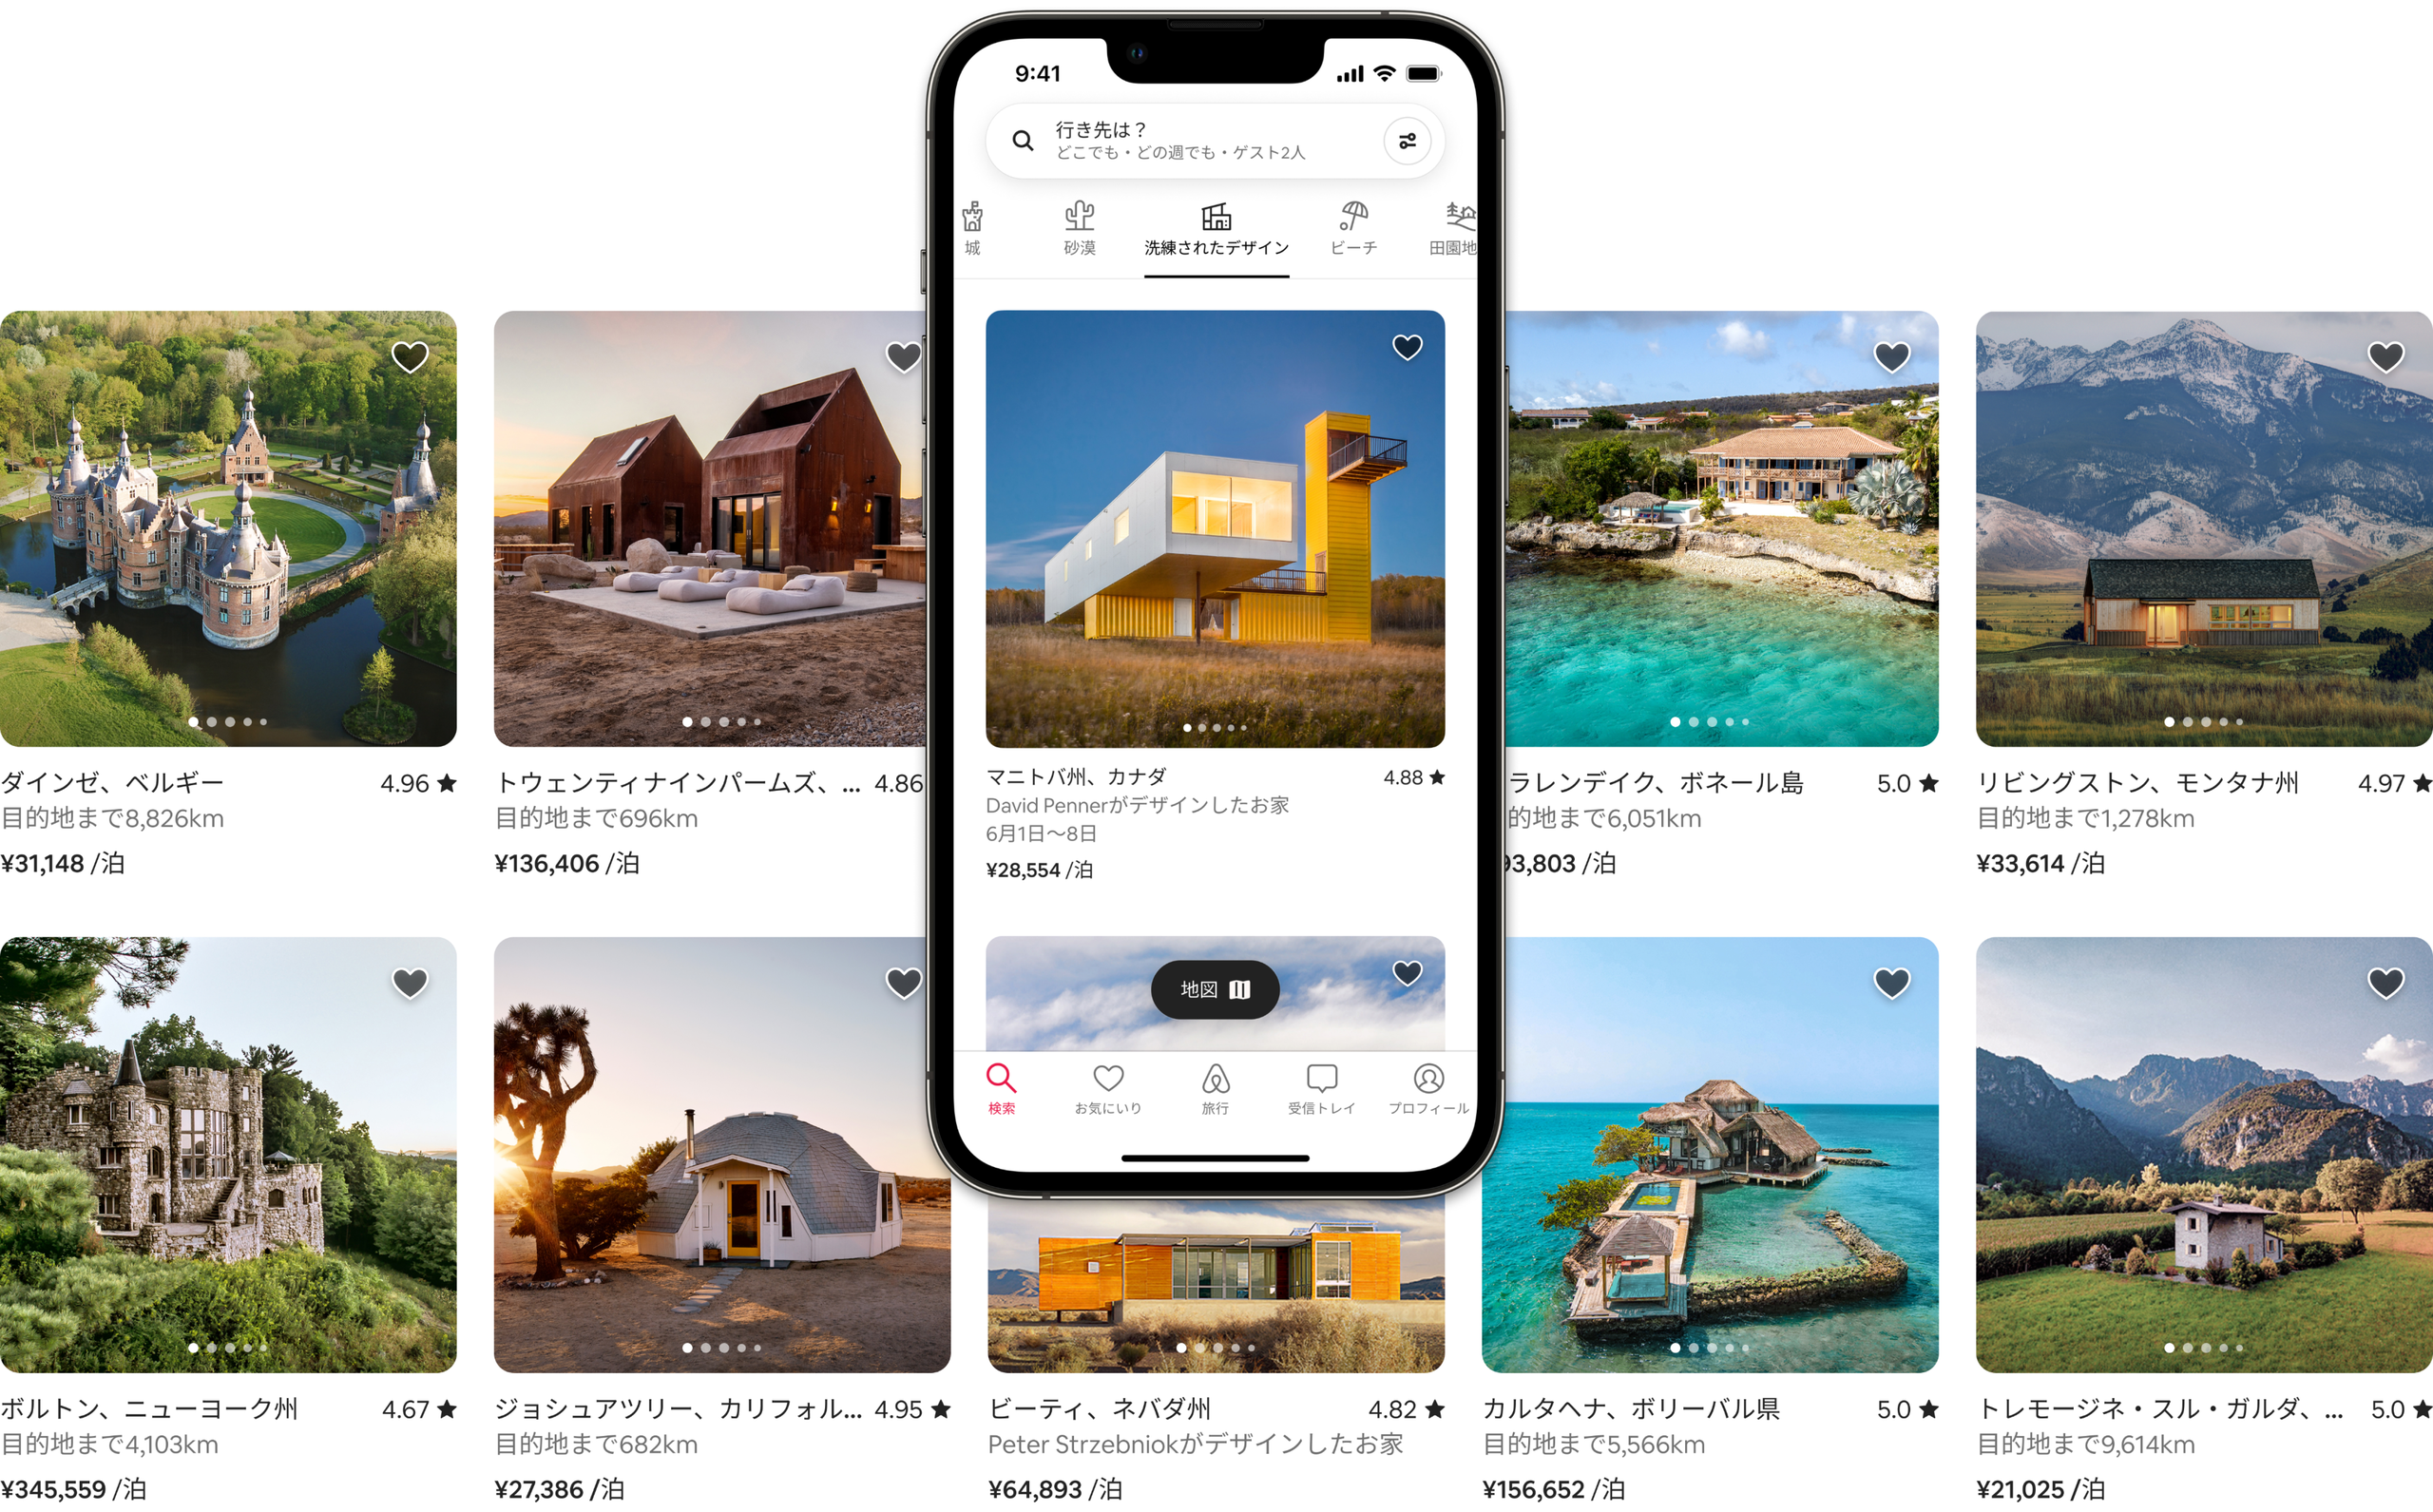 Airbnbの「城」「砂漠」「洗練されたデザイン」「ビーチ」「田園地帯」のカテゴリに属する宿泊先が、2列に並んだ美しい写真で紹介されています。宿泊先の1つが携帯電話の画面に表示され、Airbnbアプリで宿泊先がどのように表示されるかがわかるようになっています。